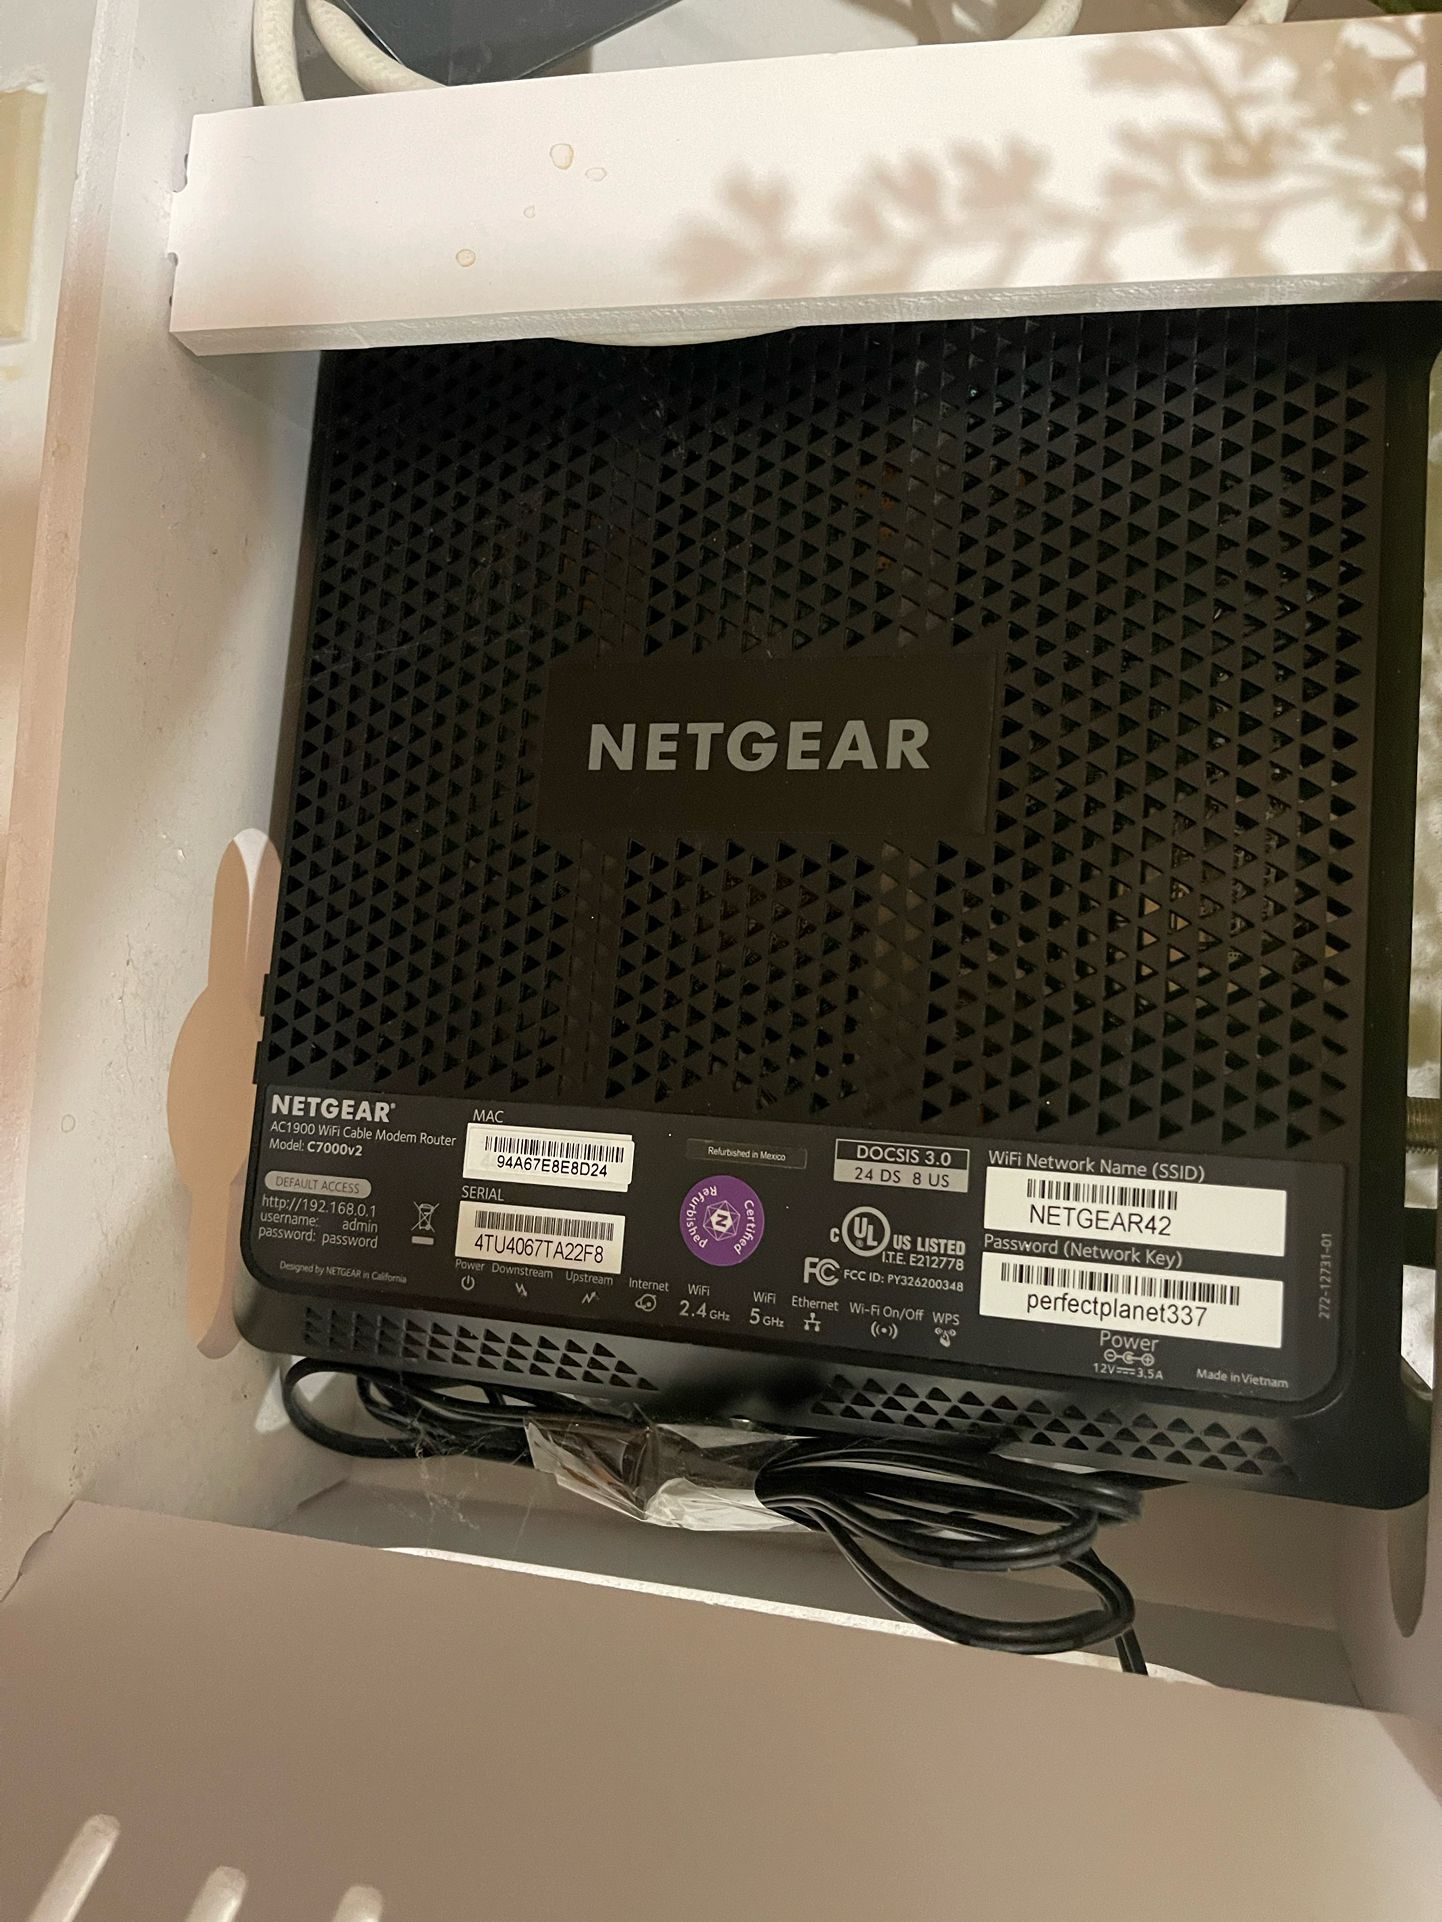 Netgear Modem / Router Combo